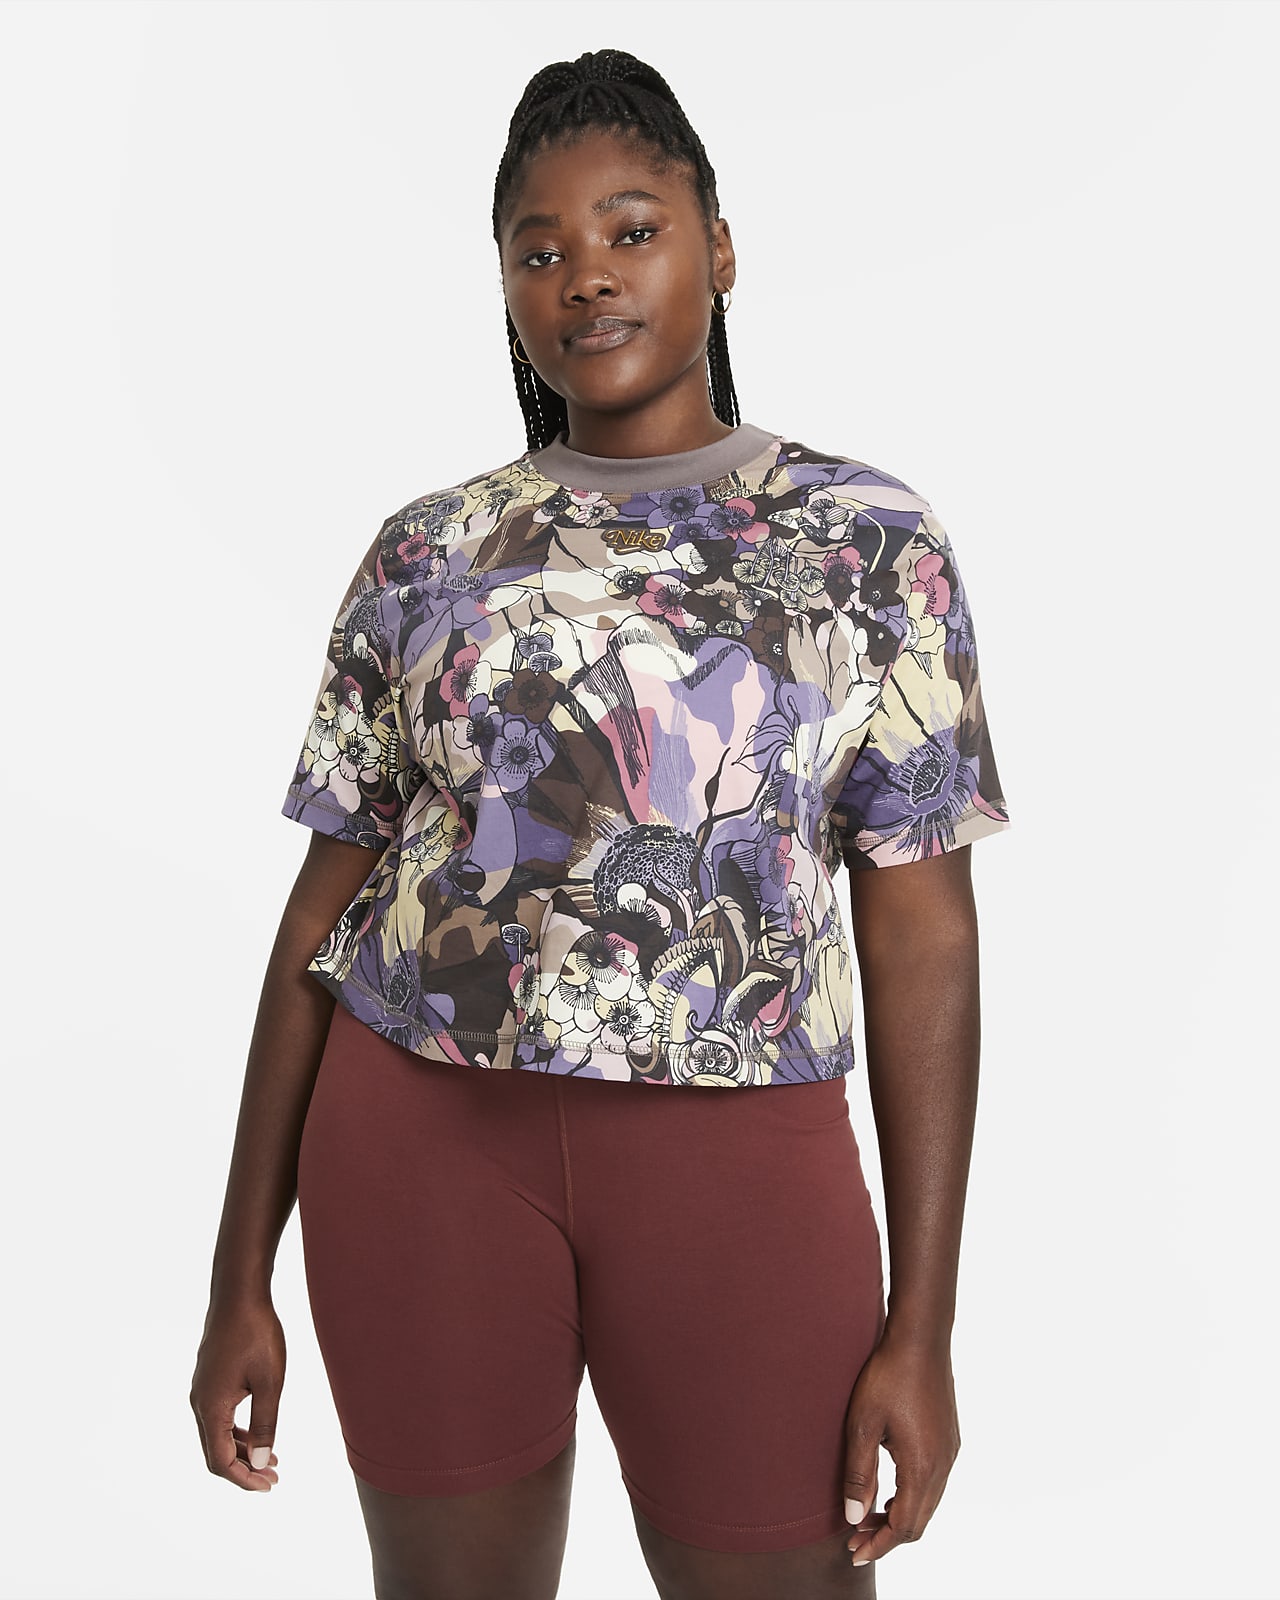 Nike Sportswear Femme Women's Short-Sleeve Top (Plus Size)